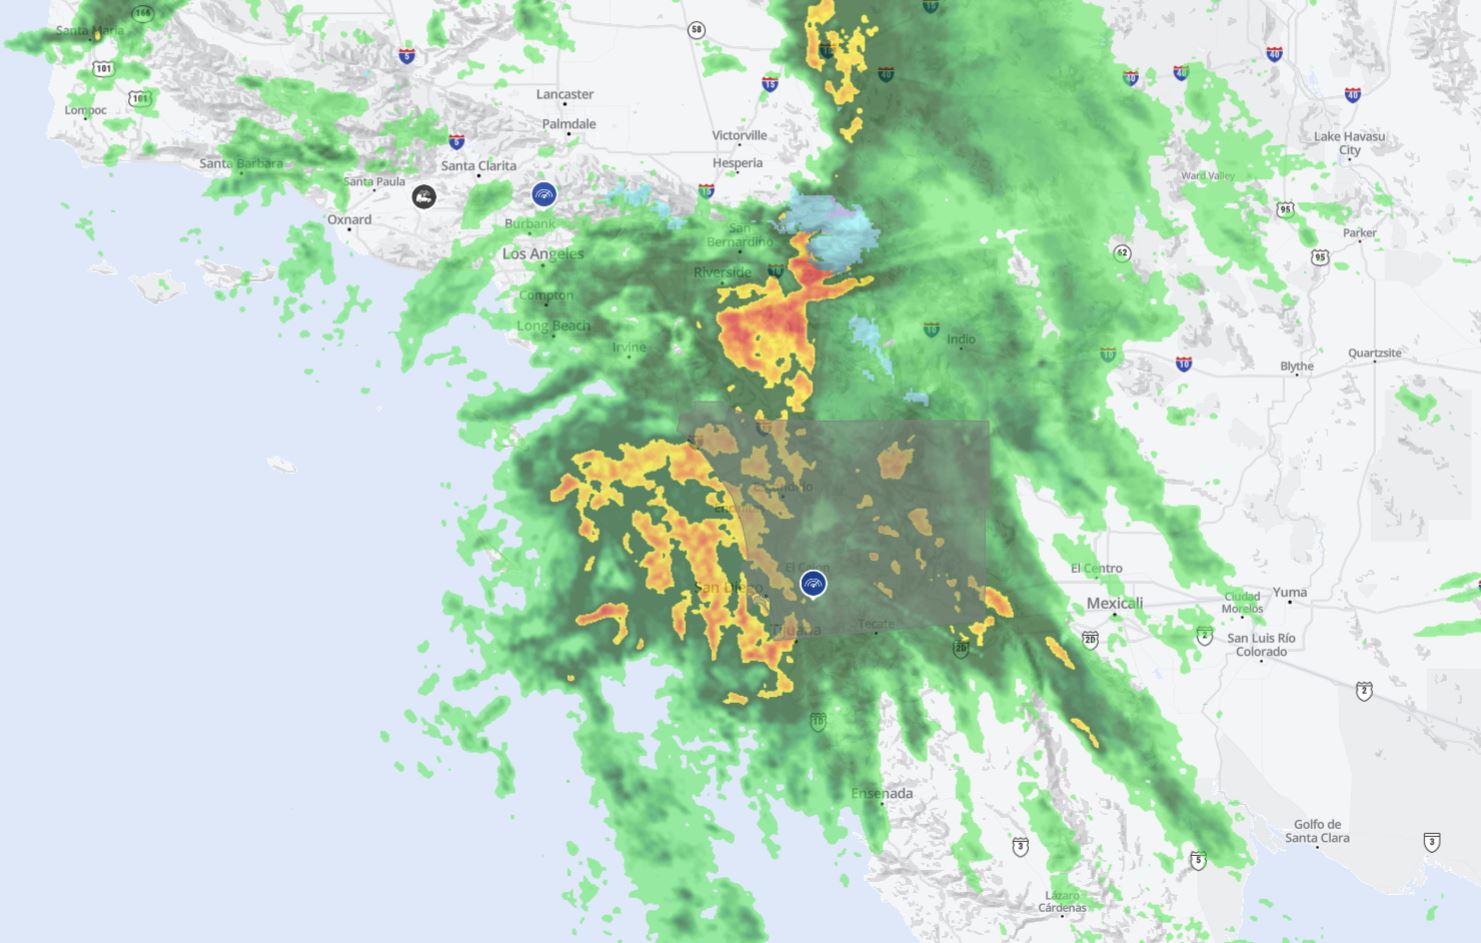 ¿Por qué la tormenta provocó tantas inundaciones?  NBC 7 Meteorólogo explica el fenómeno climático – NBC 7 San Diego